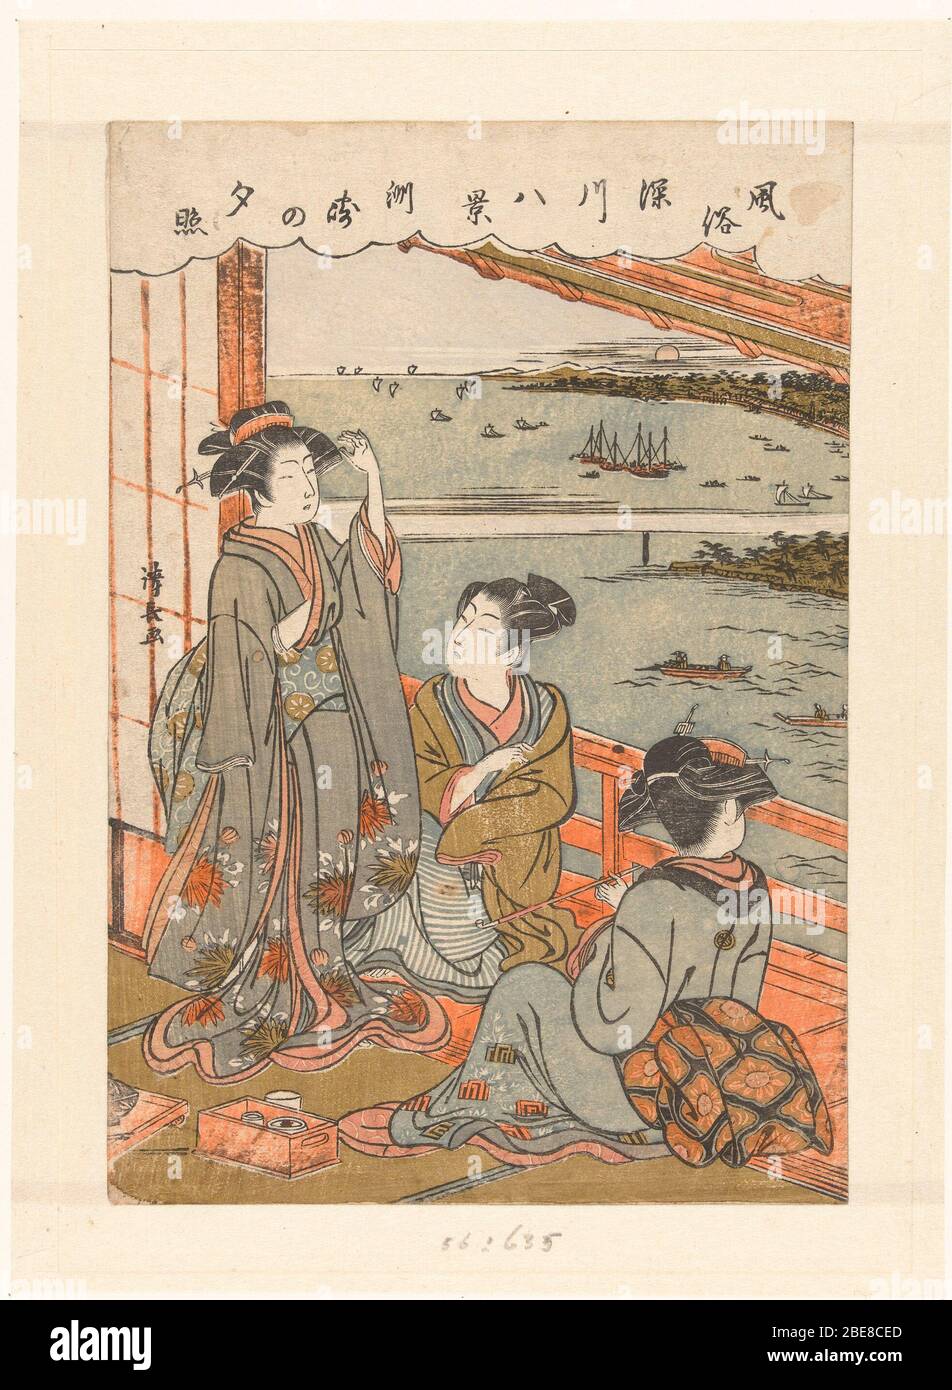 'Avondregen te Susaki; Nederlands: Twee courtisanes en een jongeman, zittend op veranda met uitzicht over een baai met bootjes en ondergaande zon; de jongeman, opkijkend naar staande courtisane in kimono met chrysanten patroon, zit tegenover een courtisane met lange kroast je et piokei, nait tei näg steril. Etiqueta: Mencionado en el objeto Torii Kiyonaga (1752 - 28-jun-1815), 1776 - 1780, kleurenhoutsnede; lijnblok en zwart met kleurblokken Colección: Prenten; Japón (colectie); entre 1776 y 1780 fecha QS:P571,+1750-00-00T00:00:1776-T0019:00-T0000-00-T0019:1780-T0019:00-T0000-T0019-T0000-T0000-T0000-T0000-T0000-T0000-00-T0019:00-T0000- , T Foto de stock